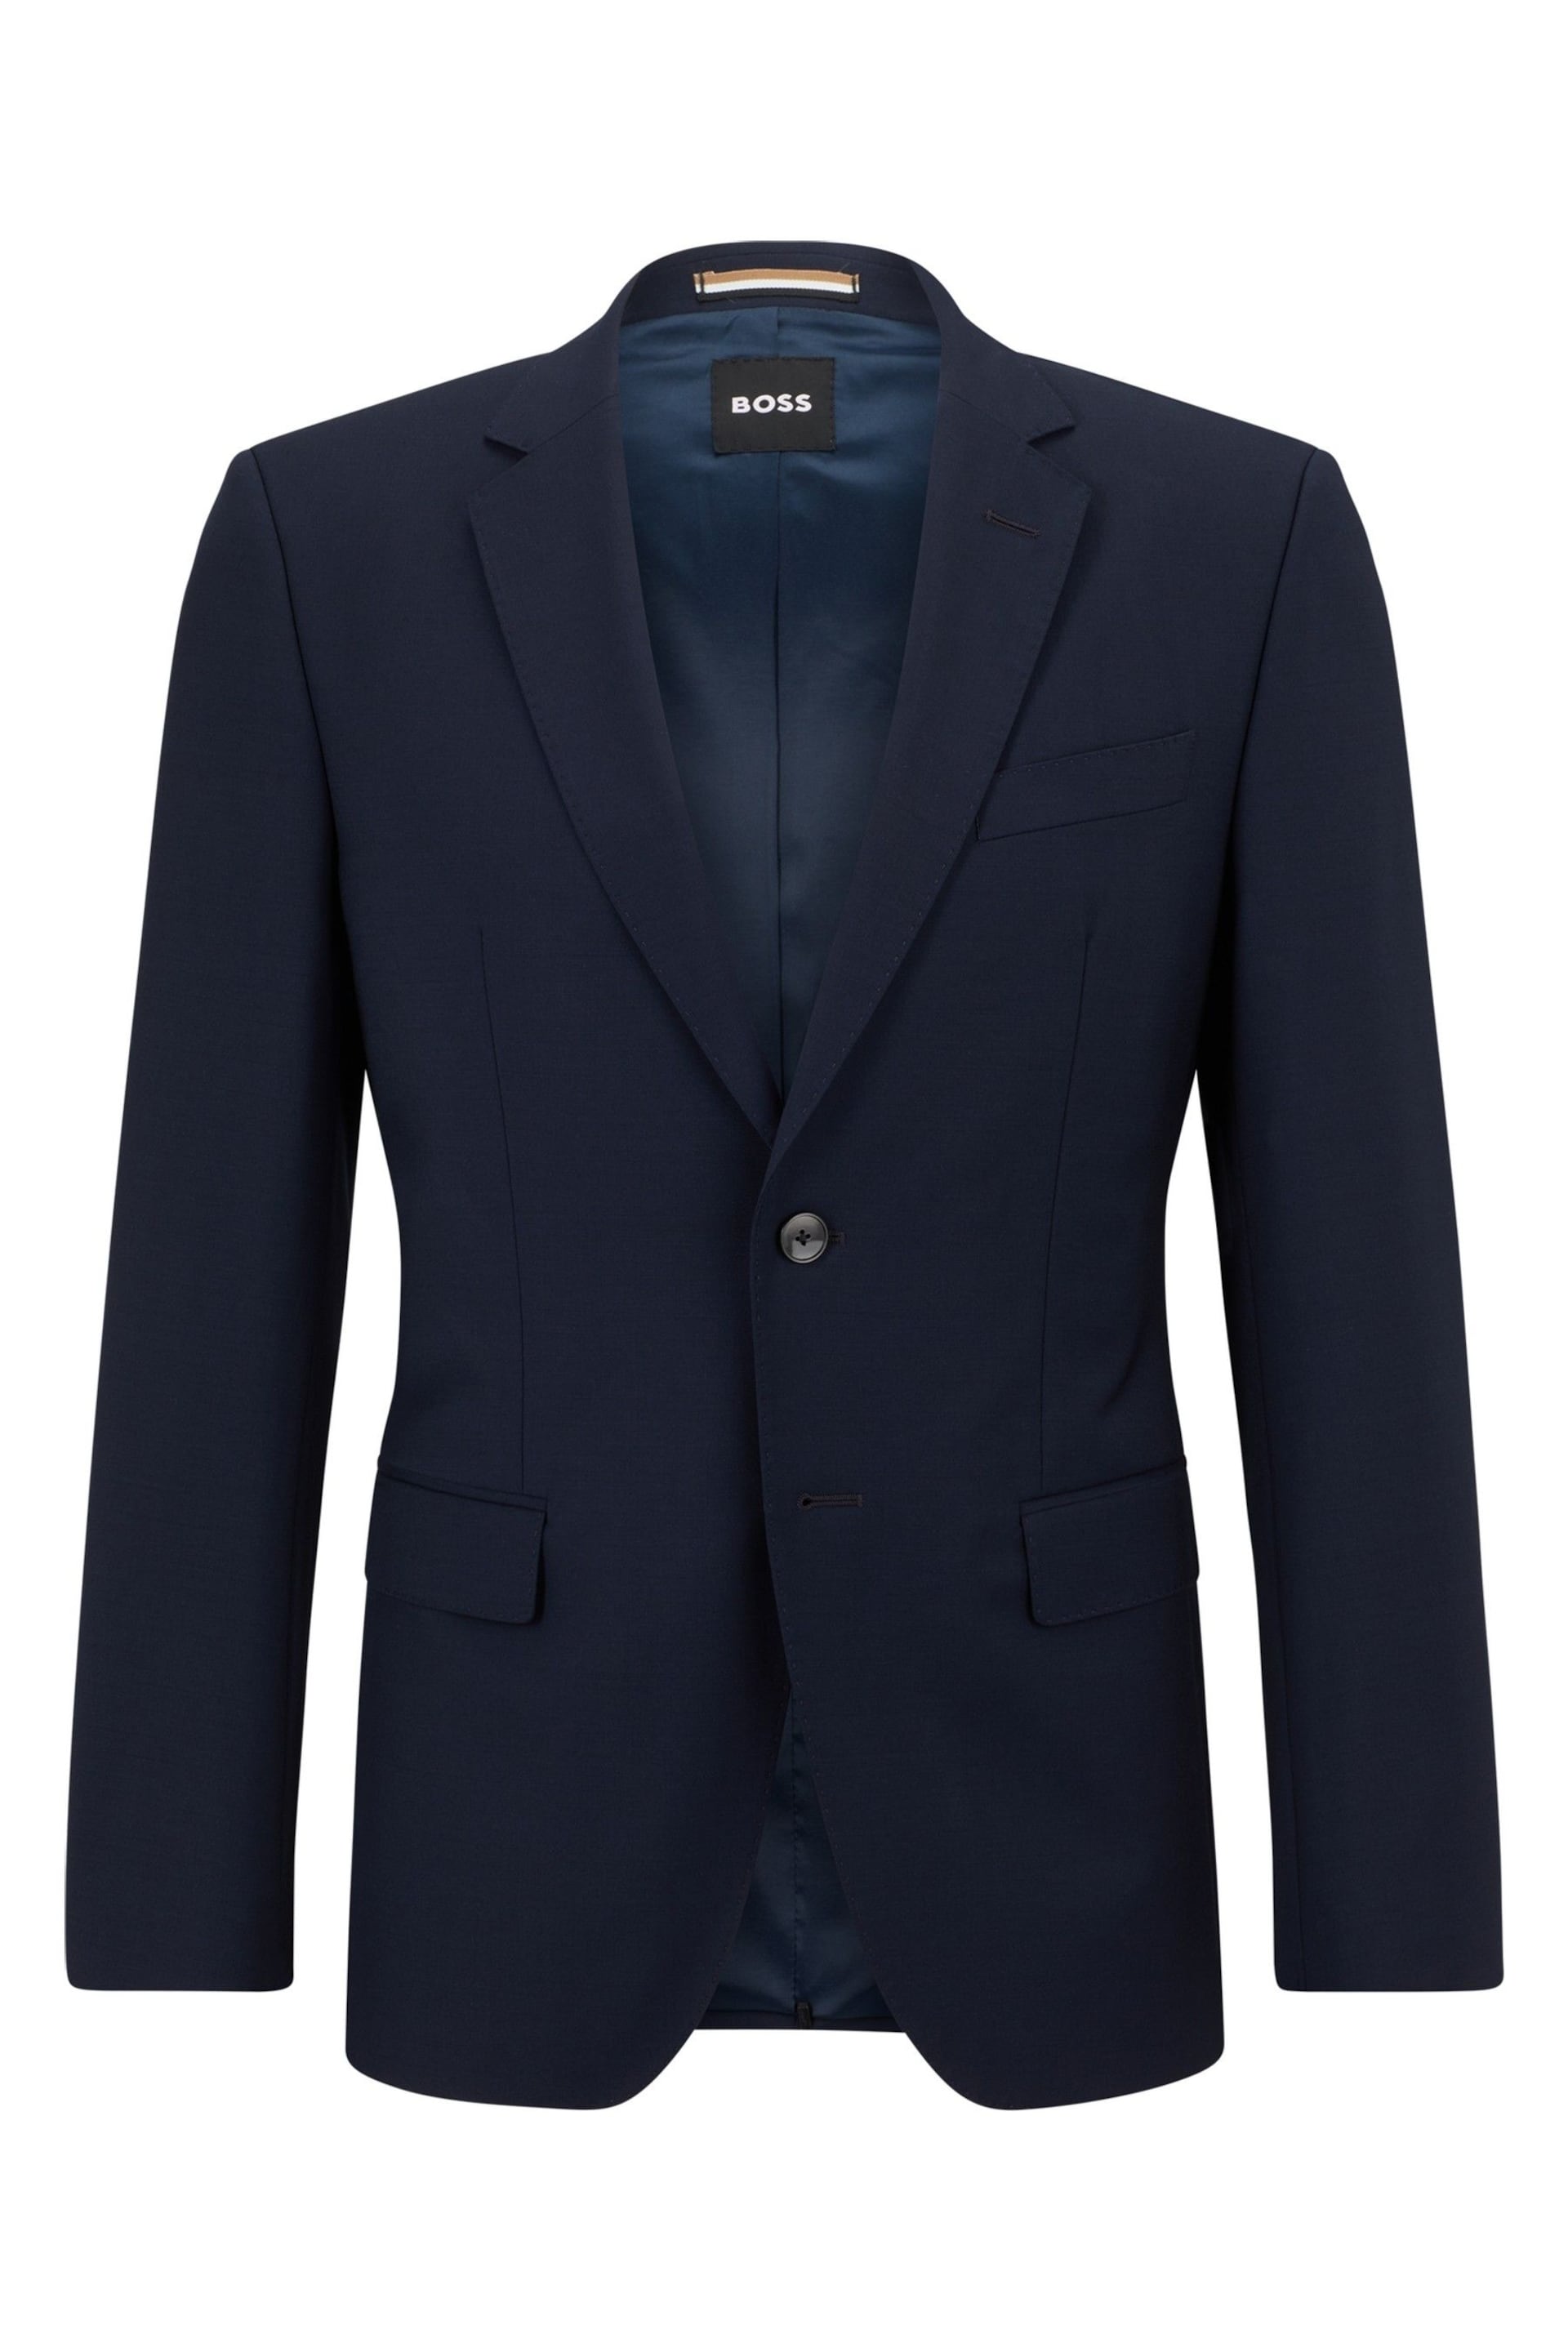 BOSS Blue Slim Fit Suit: Jacket - Image 7 of 7